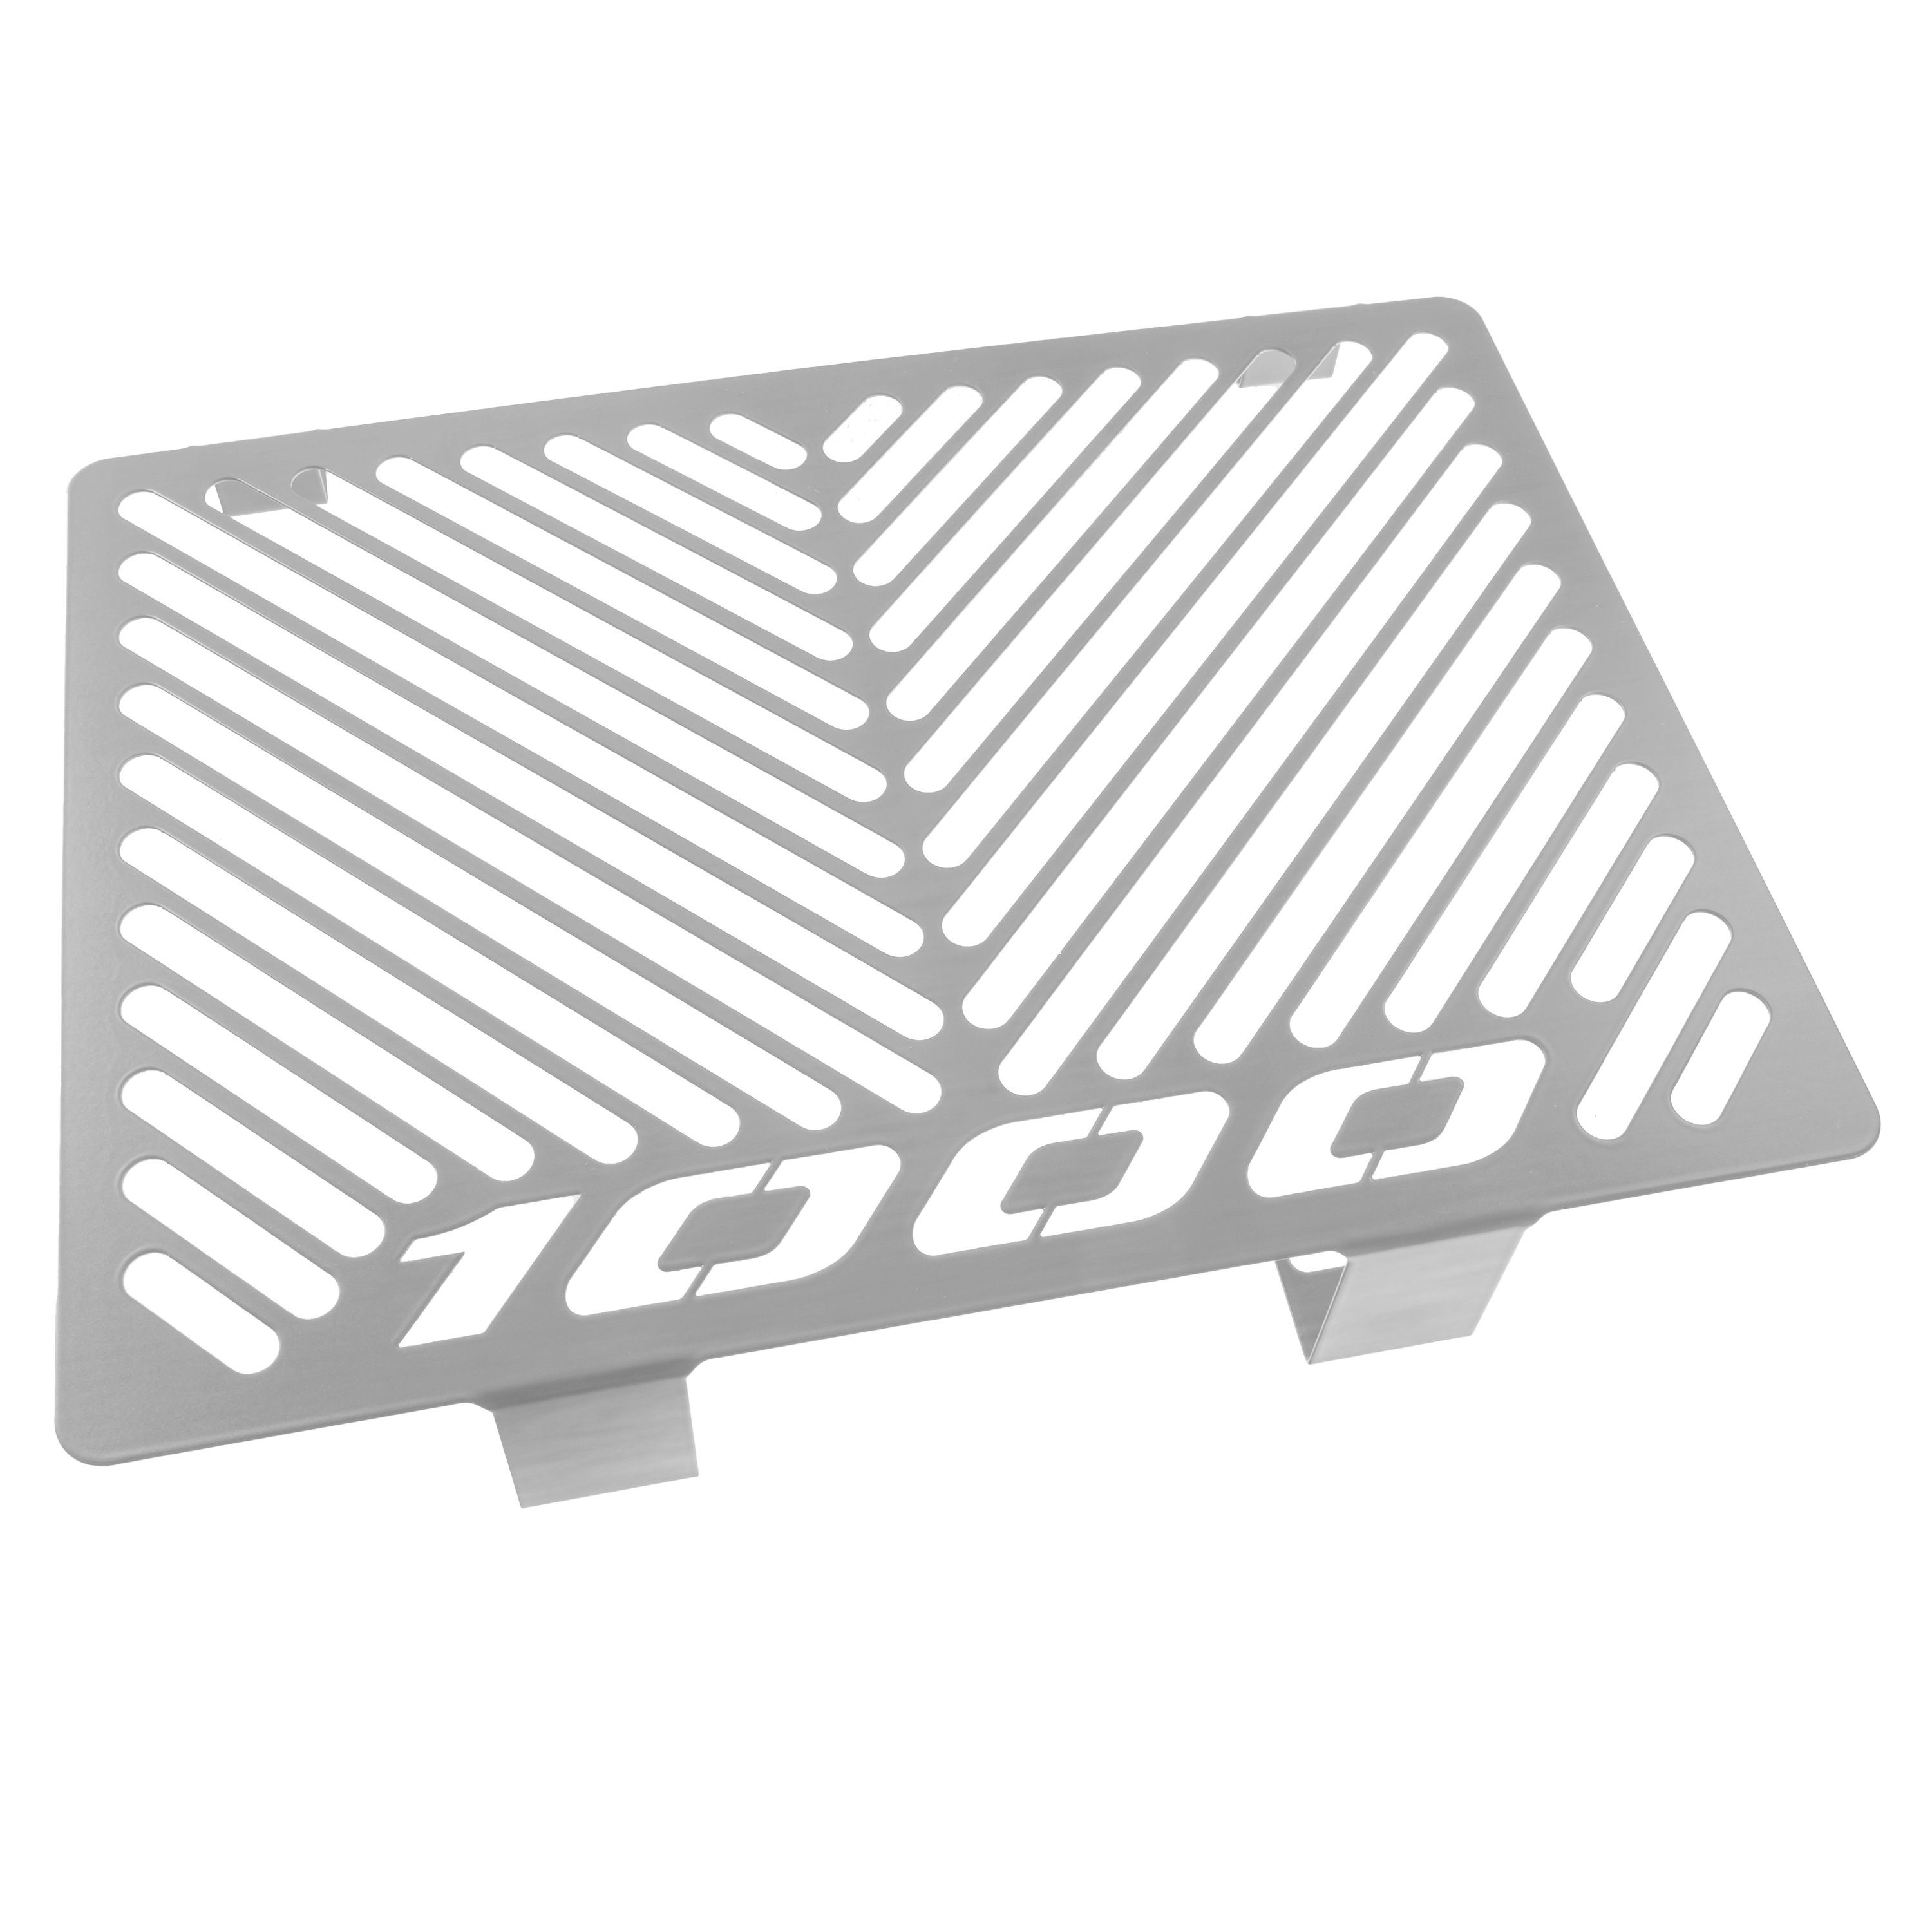 ZIEGER Motorrad-Additiv Kühlerabdeckung für Honda CBF 1000 Logo silber, Motorradkühlerabdeckung